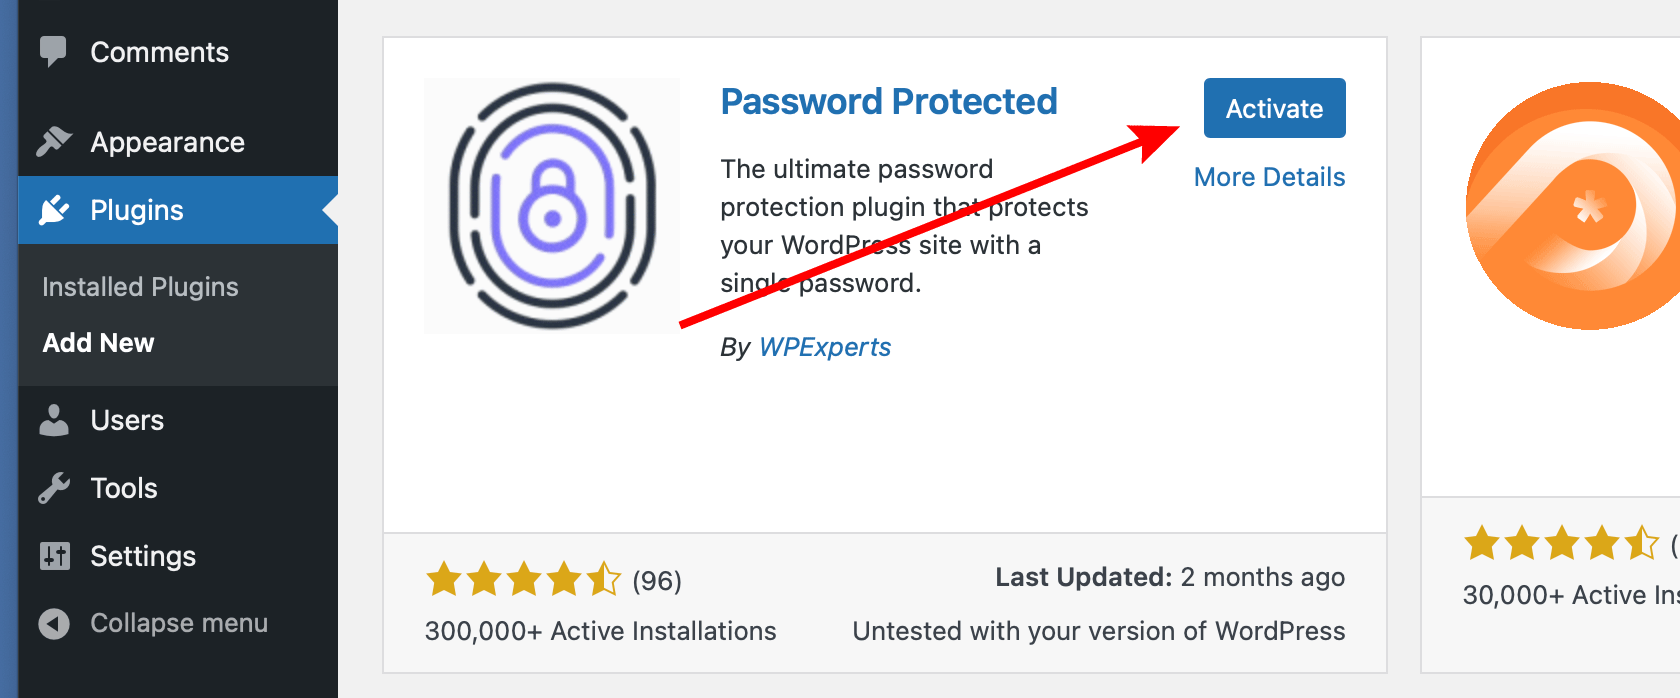 Activate Password Protected WordPress plugin